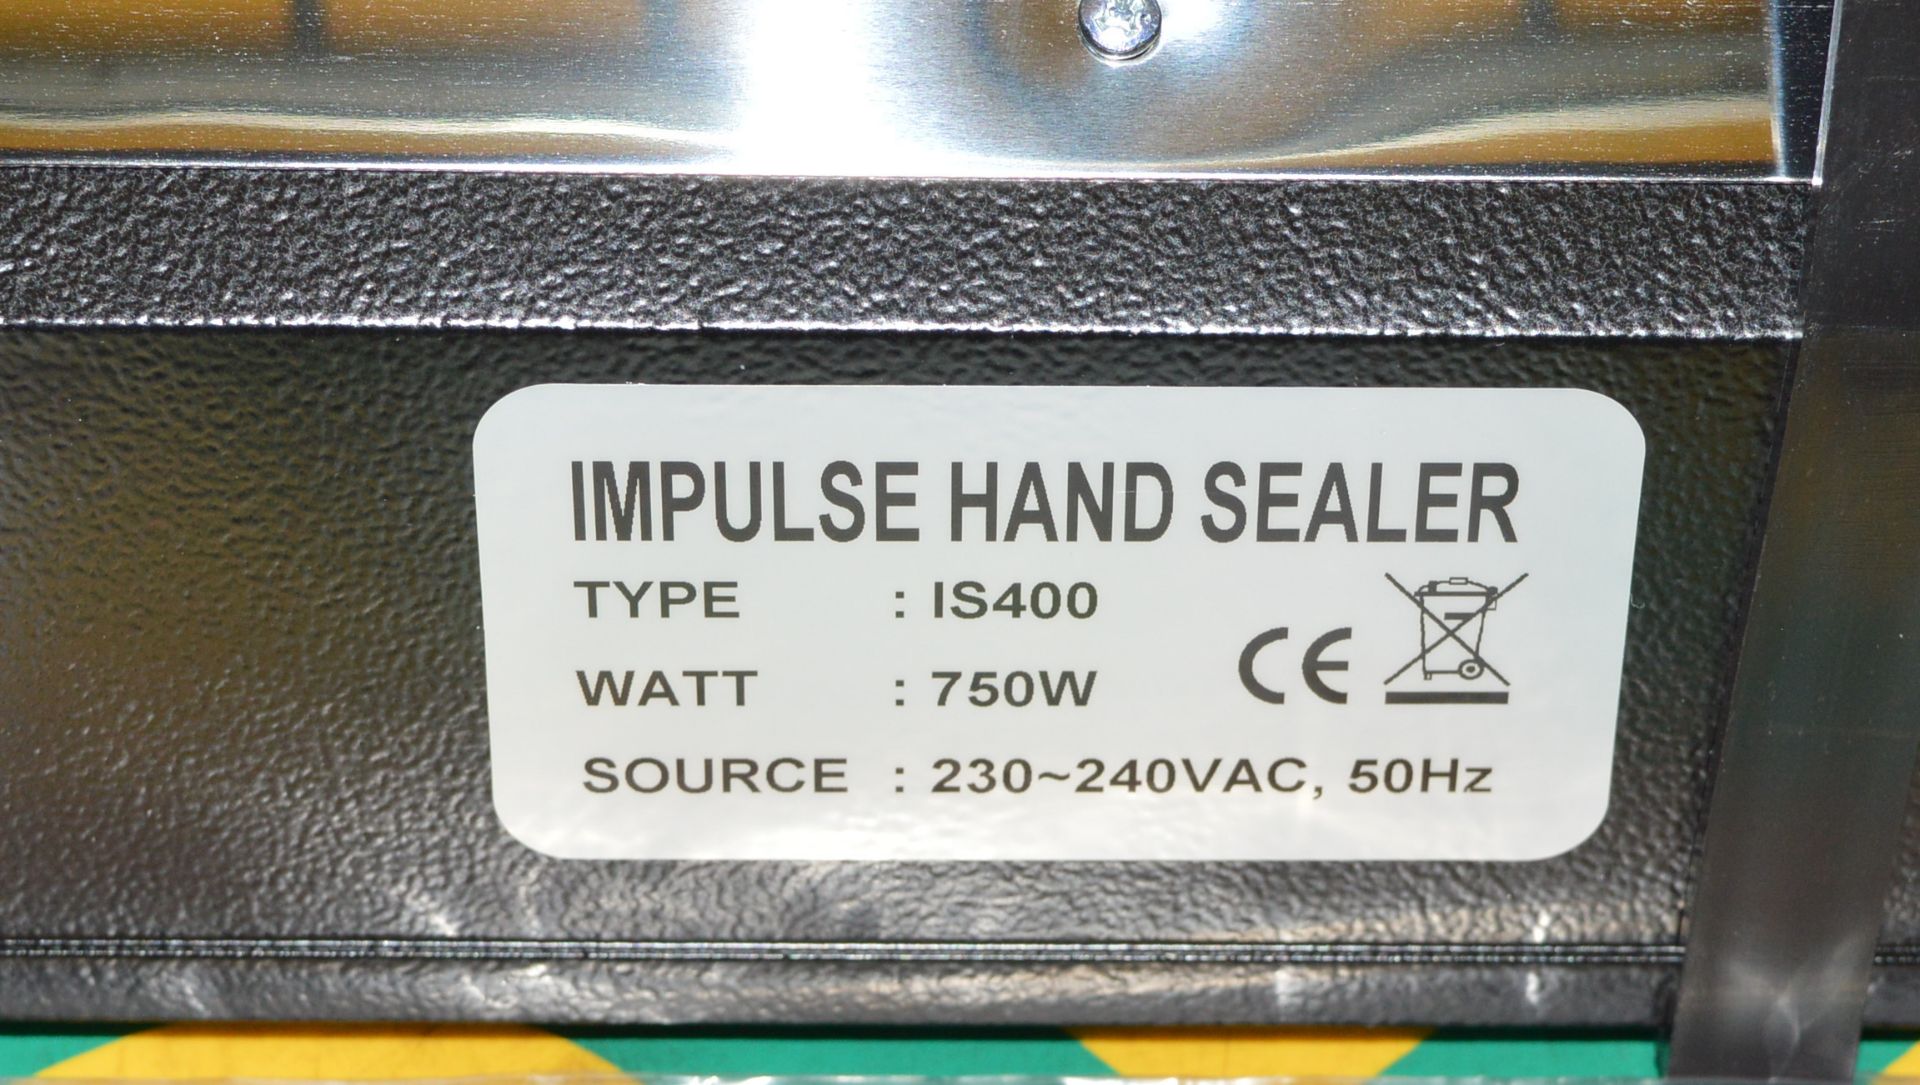 PACSEAL Impulse Hand Sealer TYPE IS400 WATT750W - Image 2 of 4